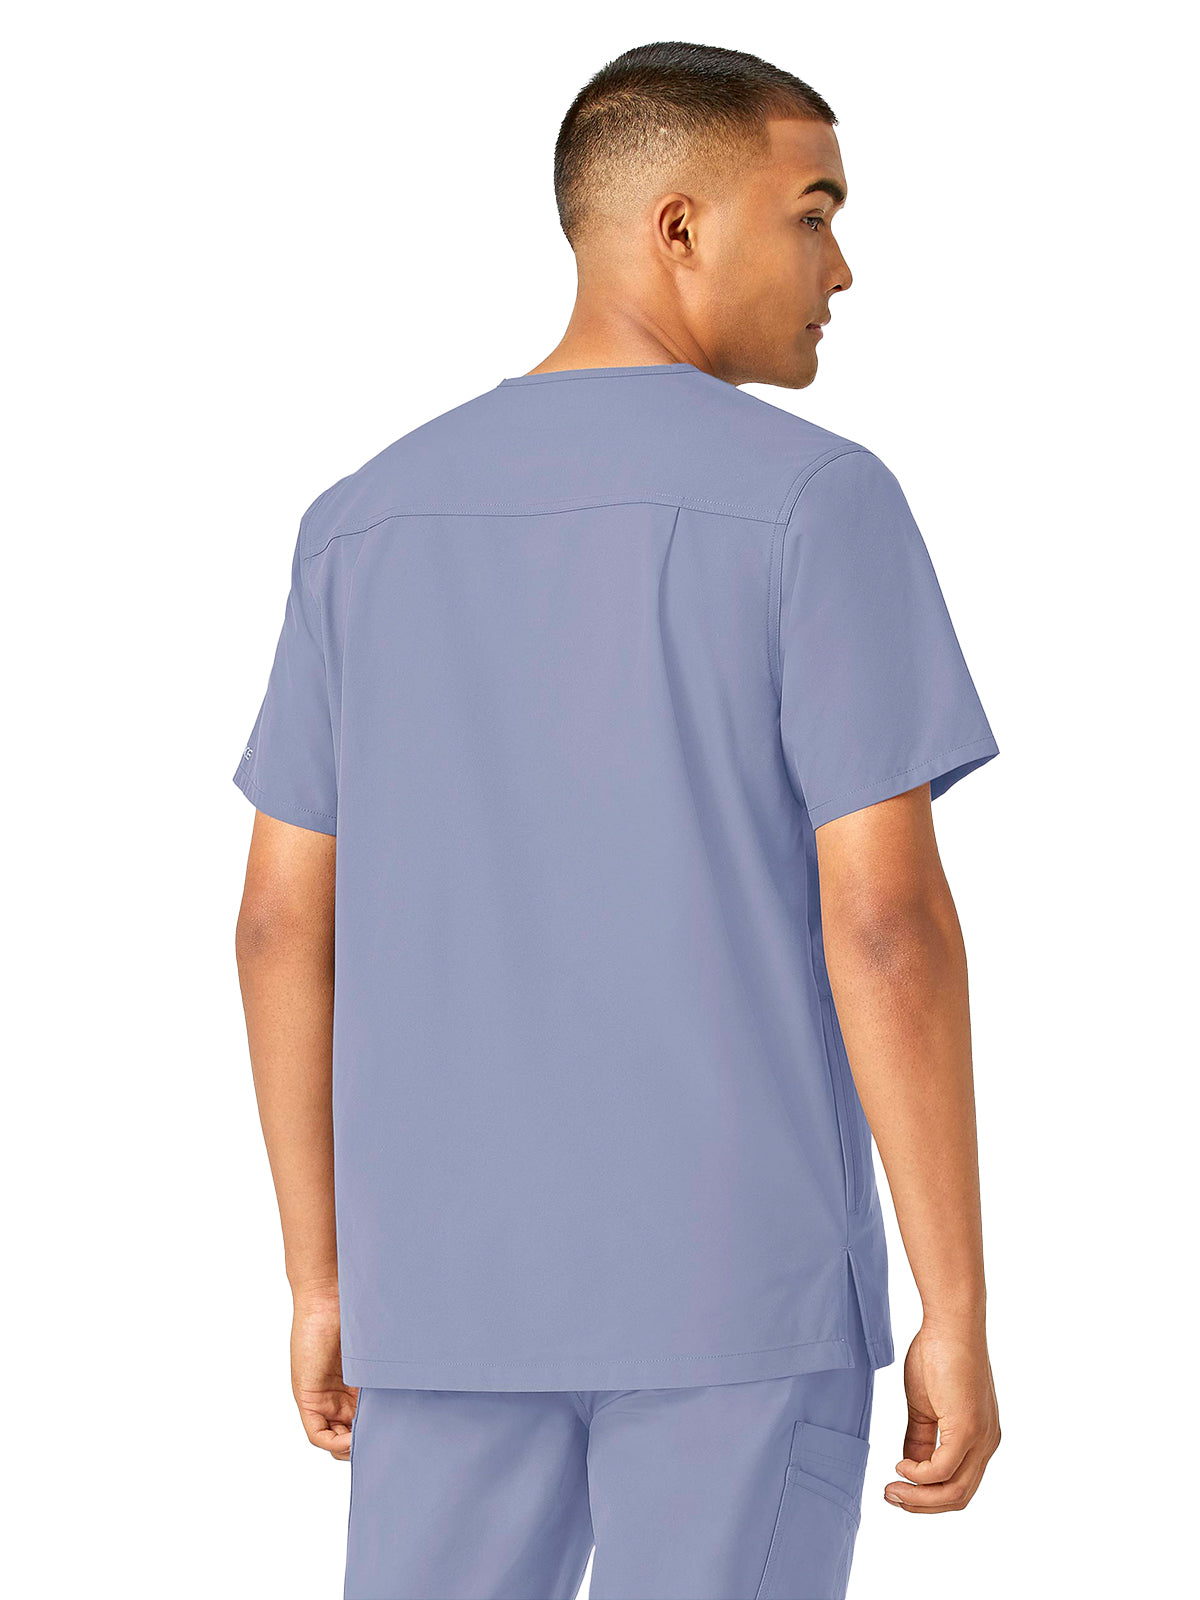 Men's Modern Fit V-Neck Top - C16113 - Ceil Blue